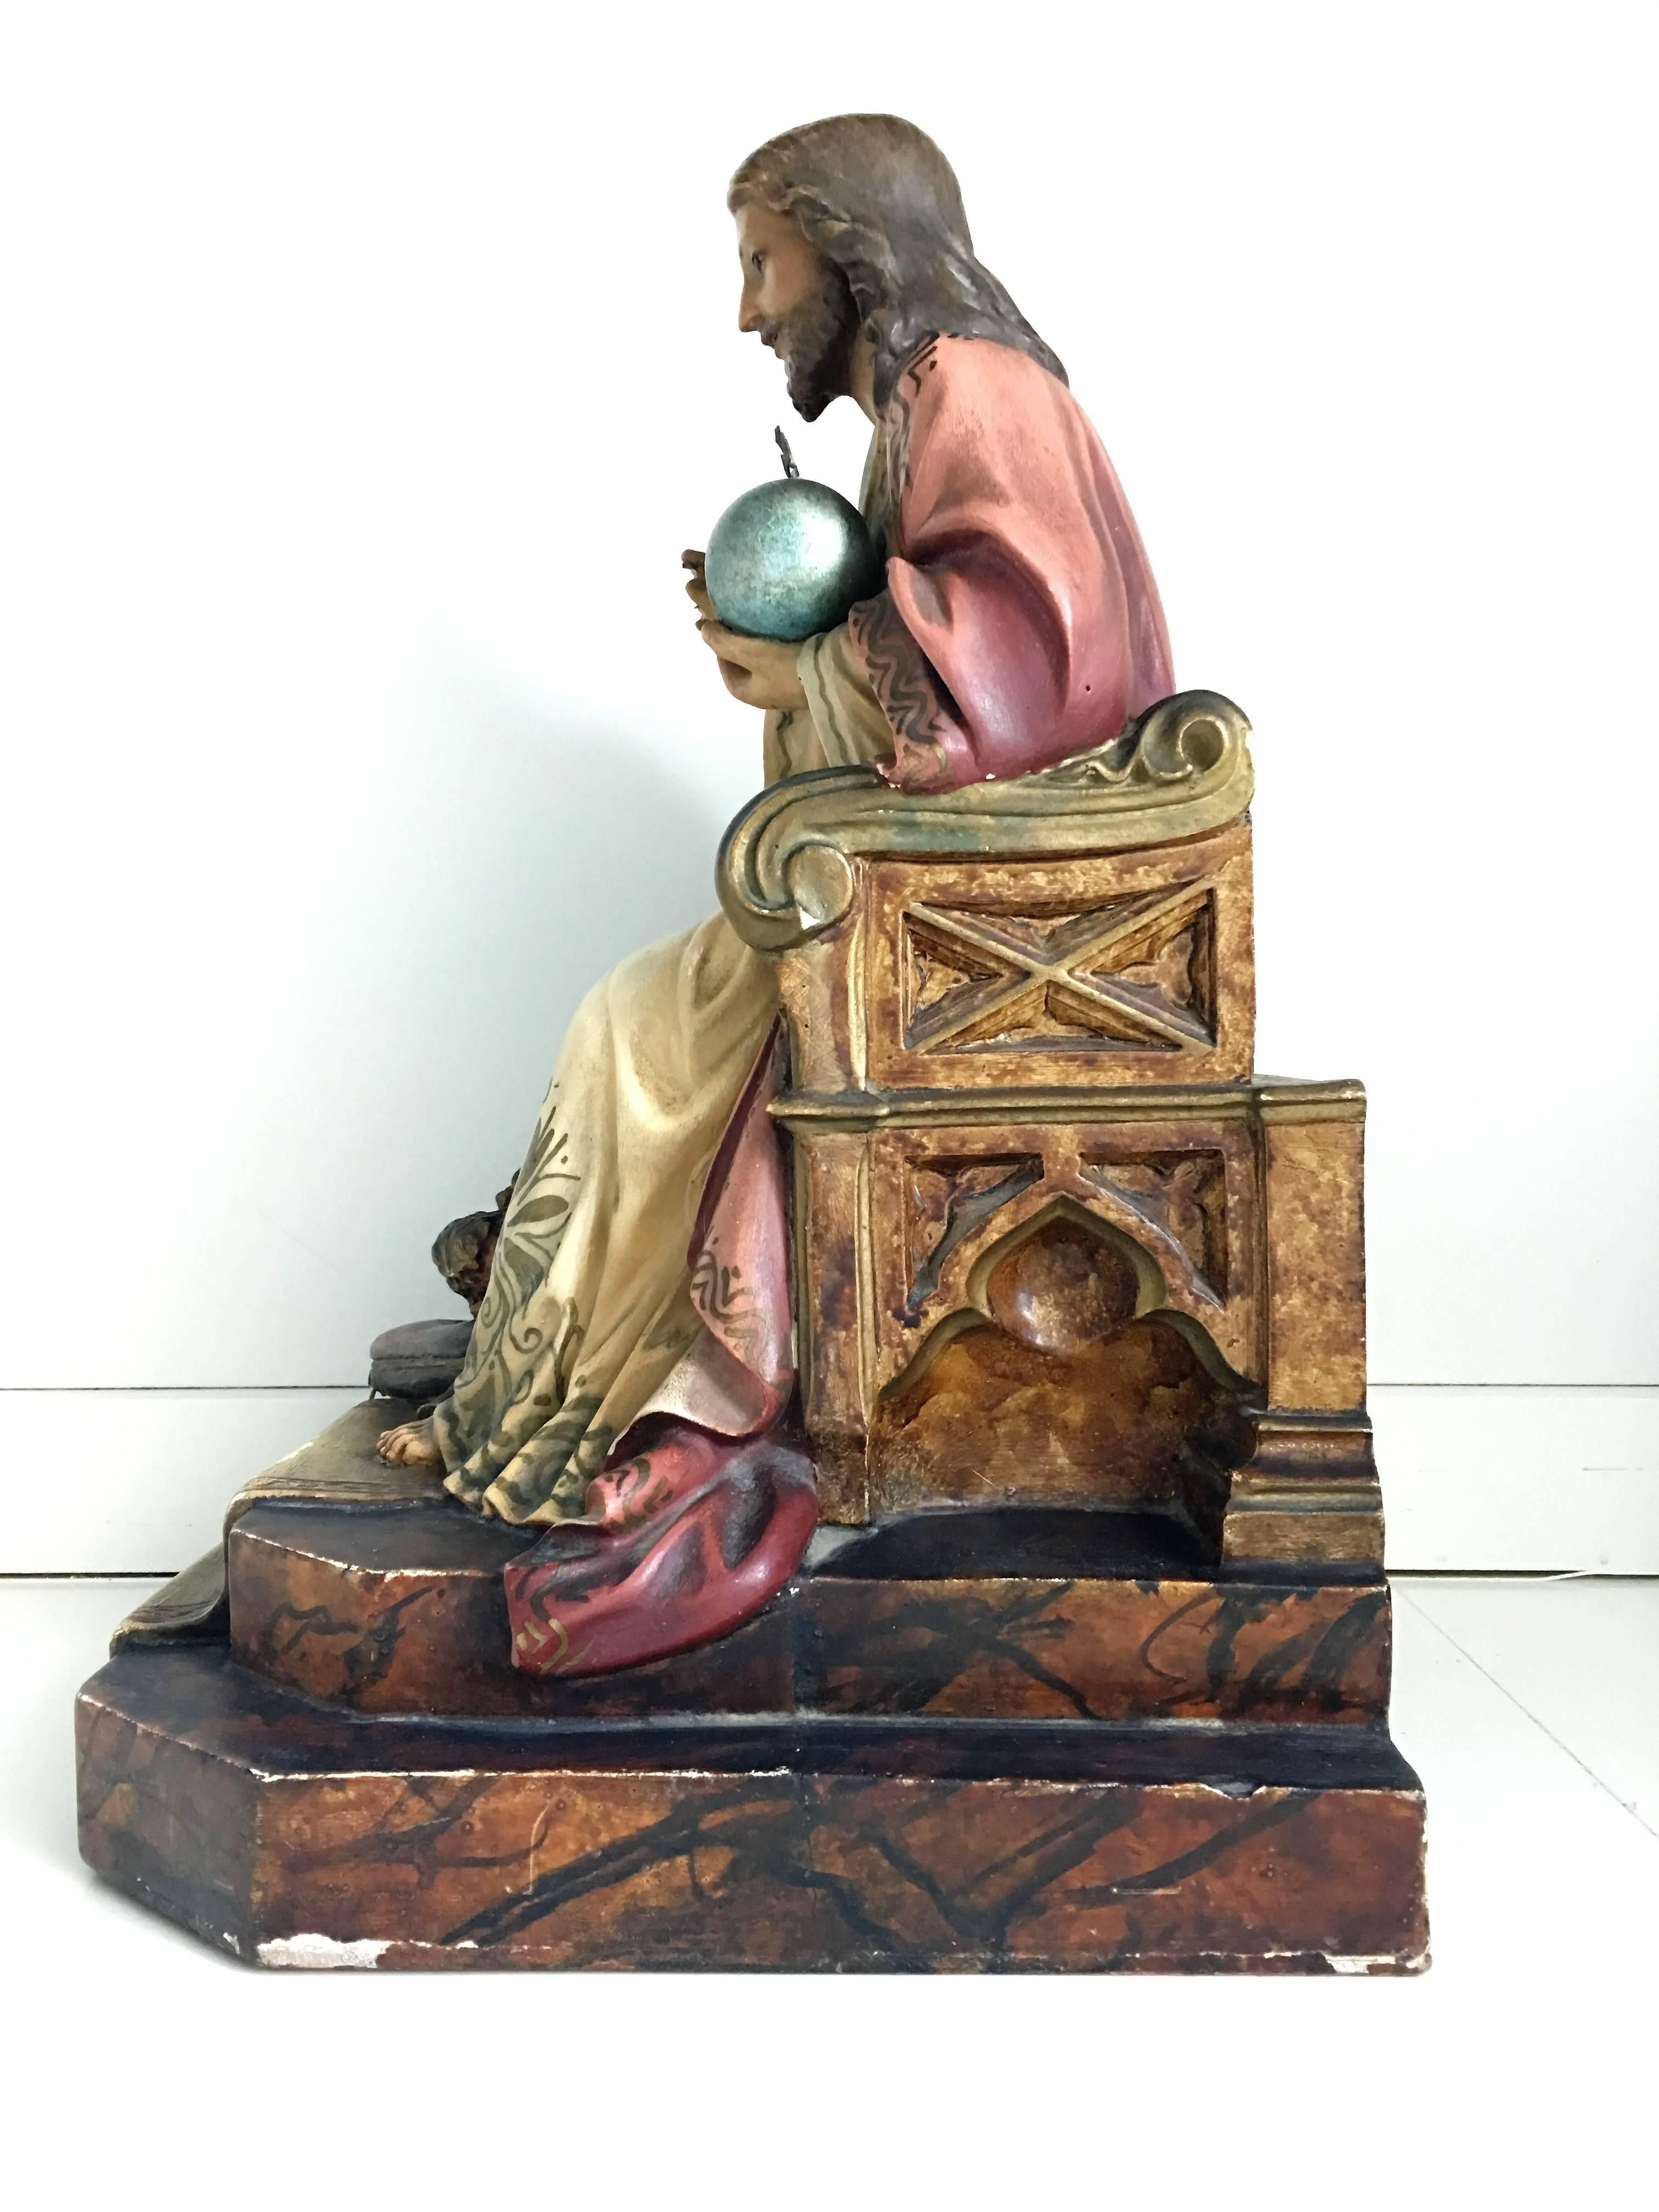 Diese schöne Christusstatue wurde um 1900 in Spanien angefertigt. Die Statue zeigt die religiöse Figur in einer traditionellen Sitzhaltung und mit dem Heiligen Herzen. Die Skulptur hat ihre ursprüngliche Lackierung. Die Skulptur hat eine weiche,